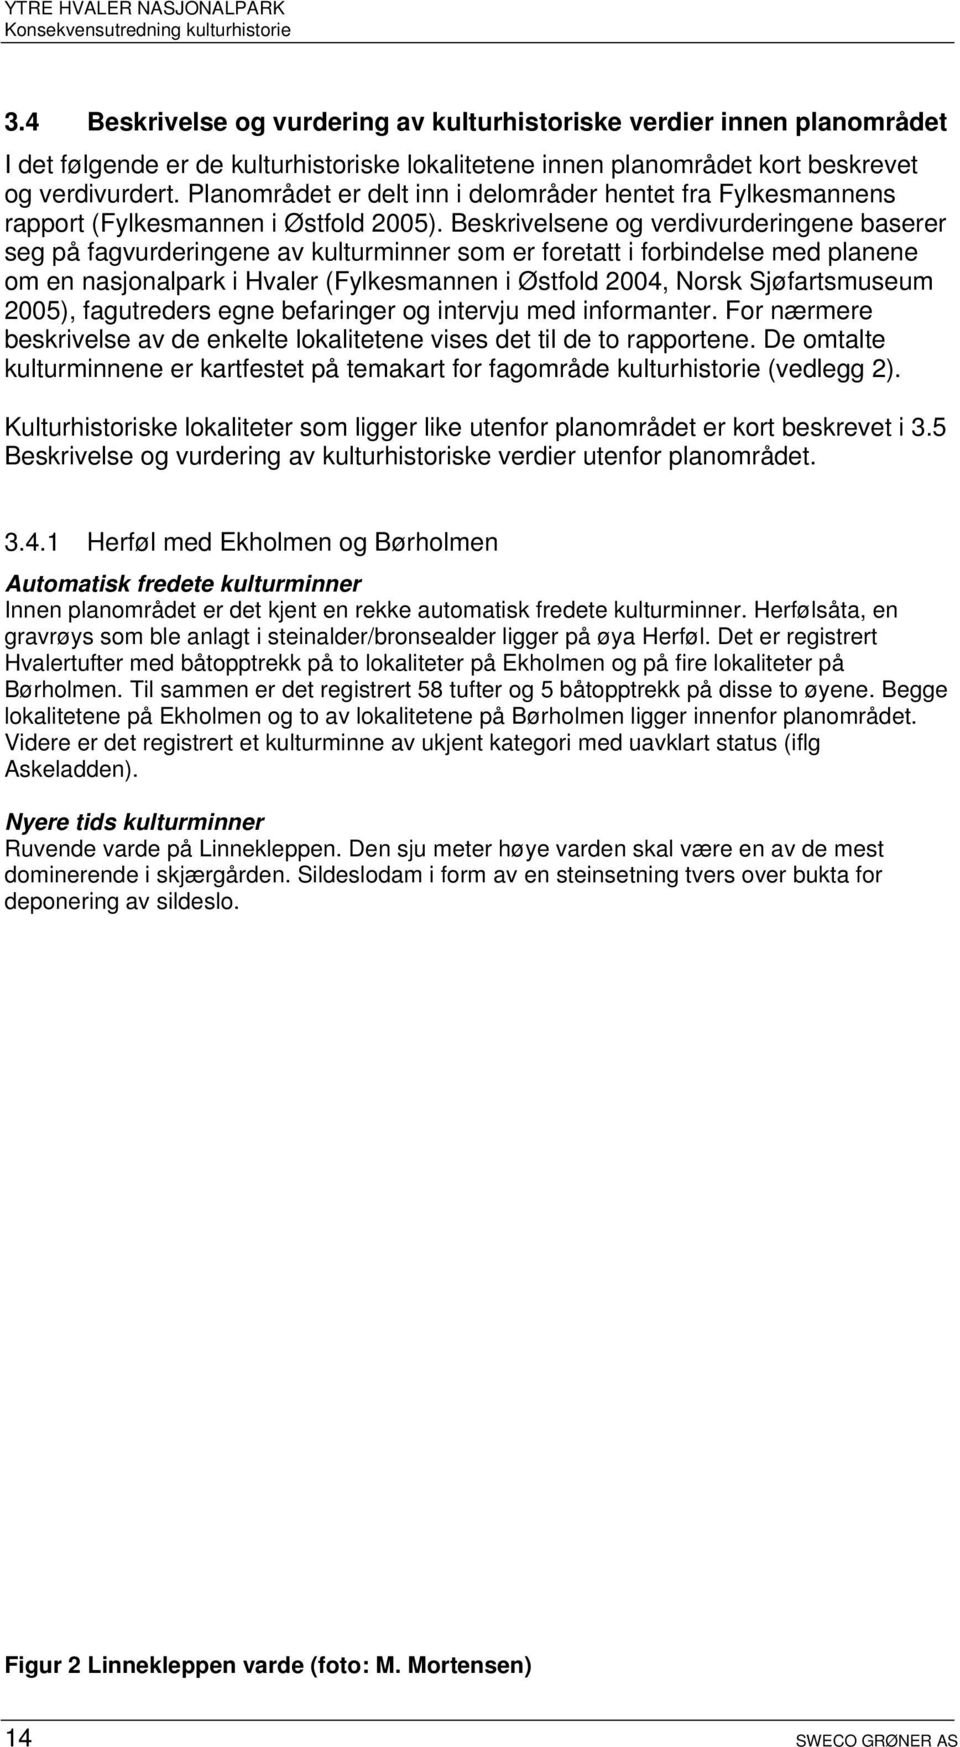 Beskrivelsene og verdivurderingene baserer seg på fagvurderingene av kulturminner som er foretatt i forbindelse med planene om en nasjonalpark i Hvaler (Fylkesmannen i Østfold 2004, Norsk